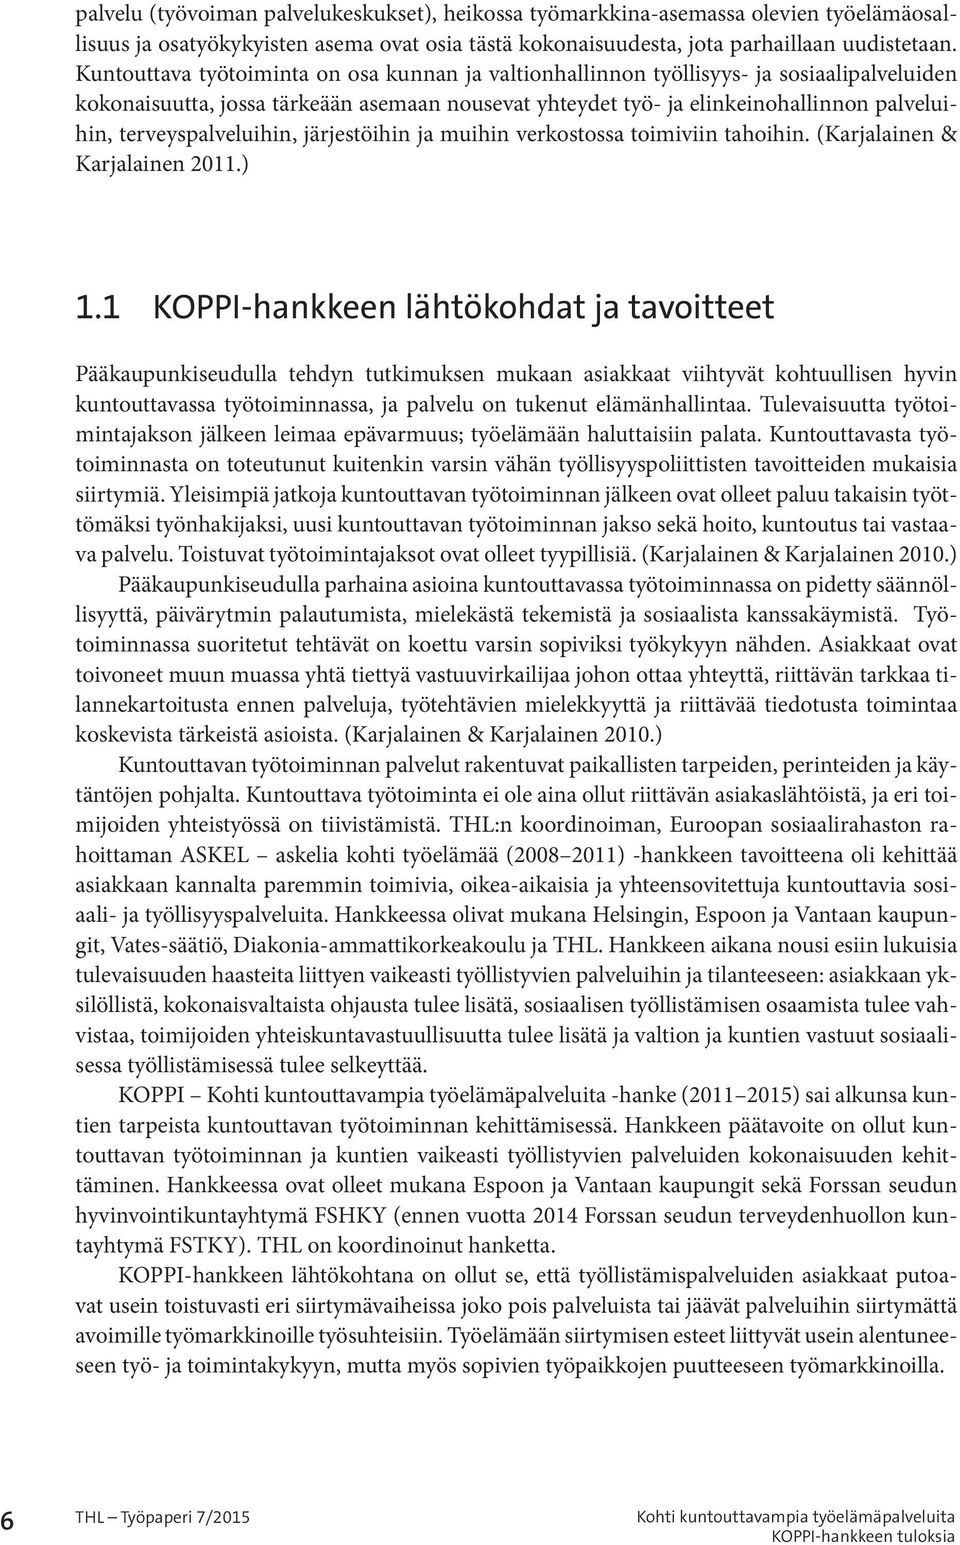 terveyspalveluihin, järjestöihin ja muihin verkostossa toimiviin tahoihin. (Karjalainen & Karjalainen 2011.) 1.